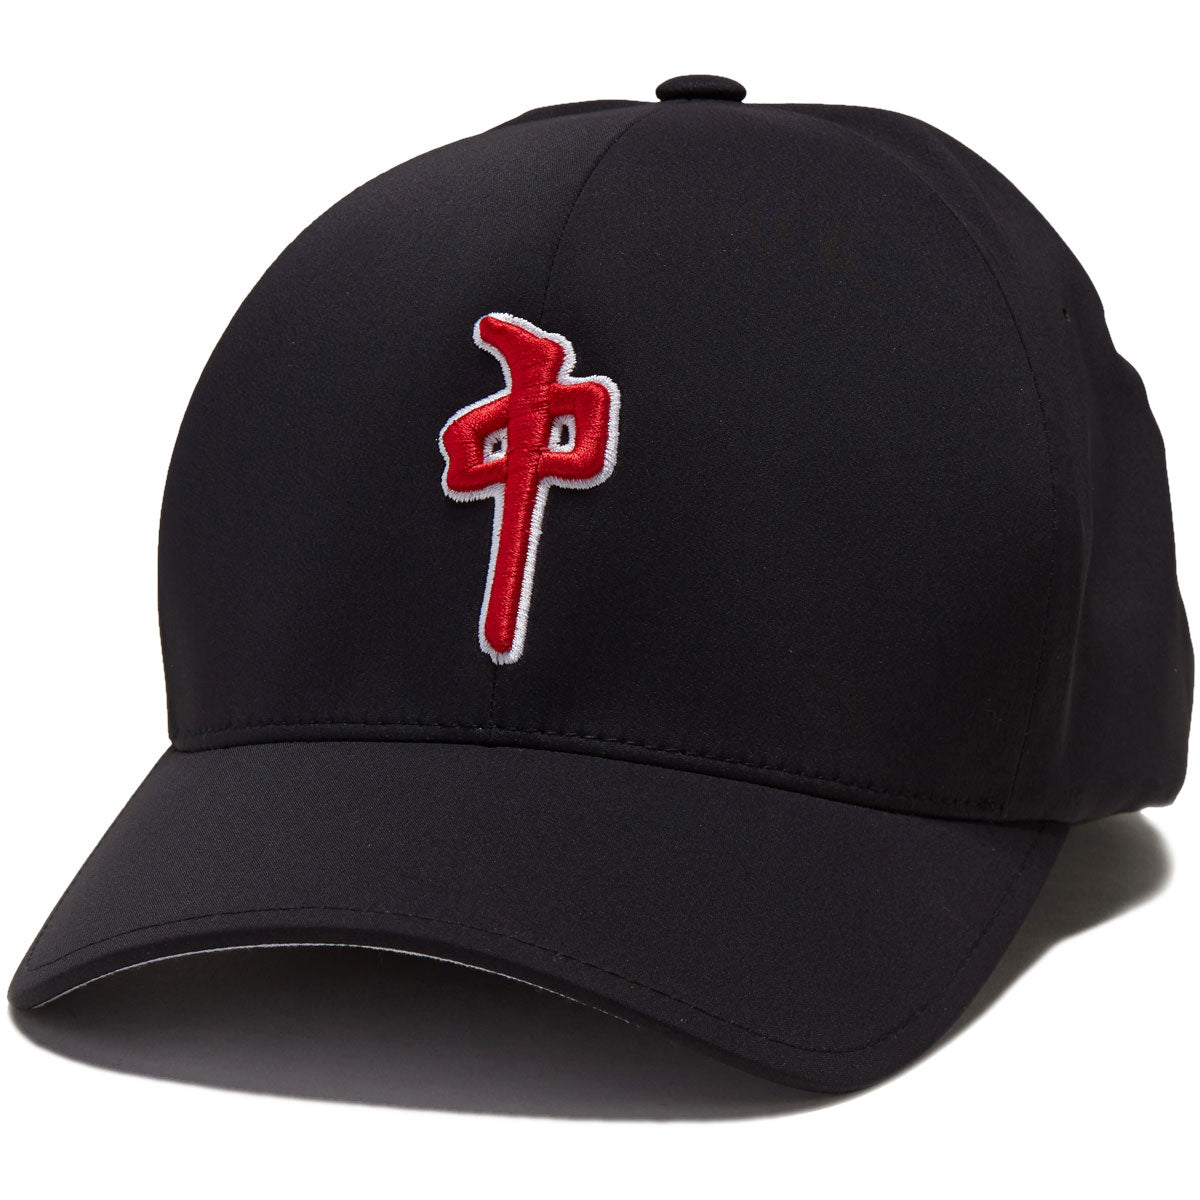 RDS Flexfit Delta Og Puffy Hat - Black/Red image 1